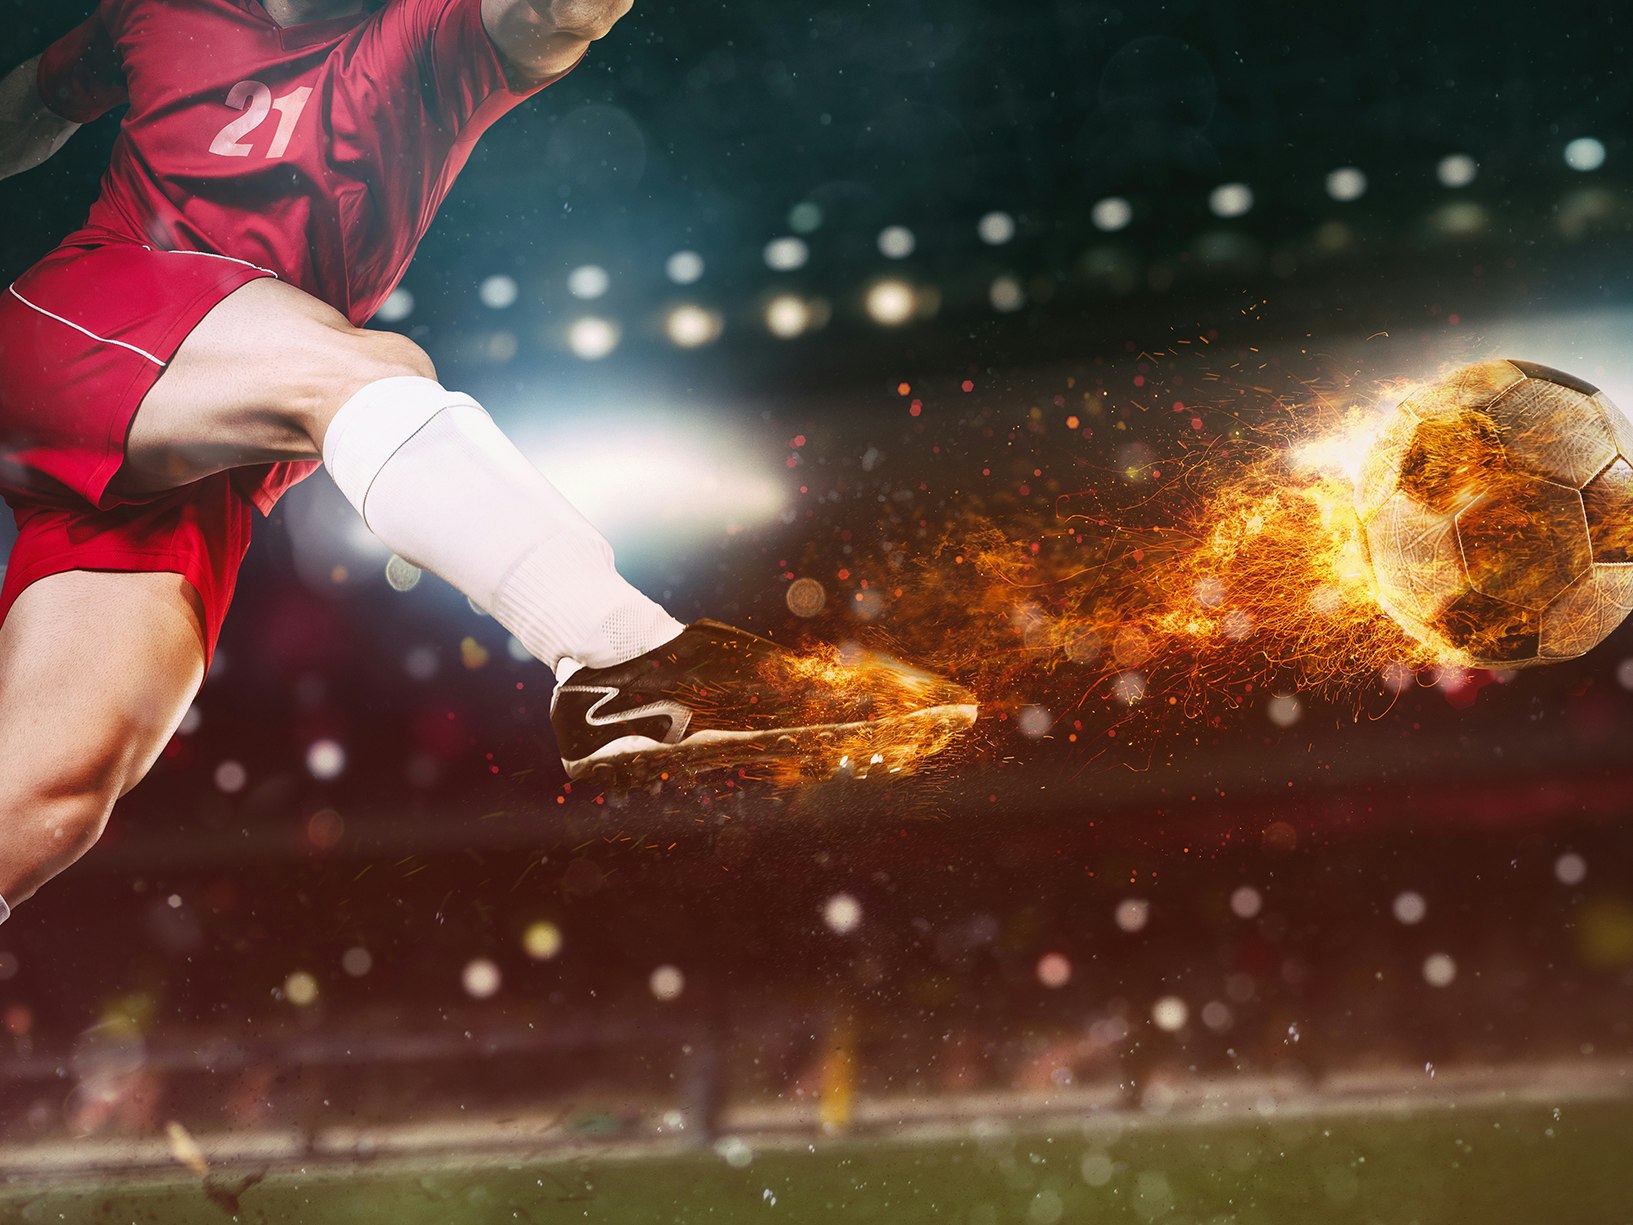 Bildeillustrasjon av en fotballspiller som skyter en ball - som tar fyr.